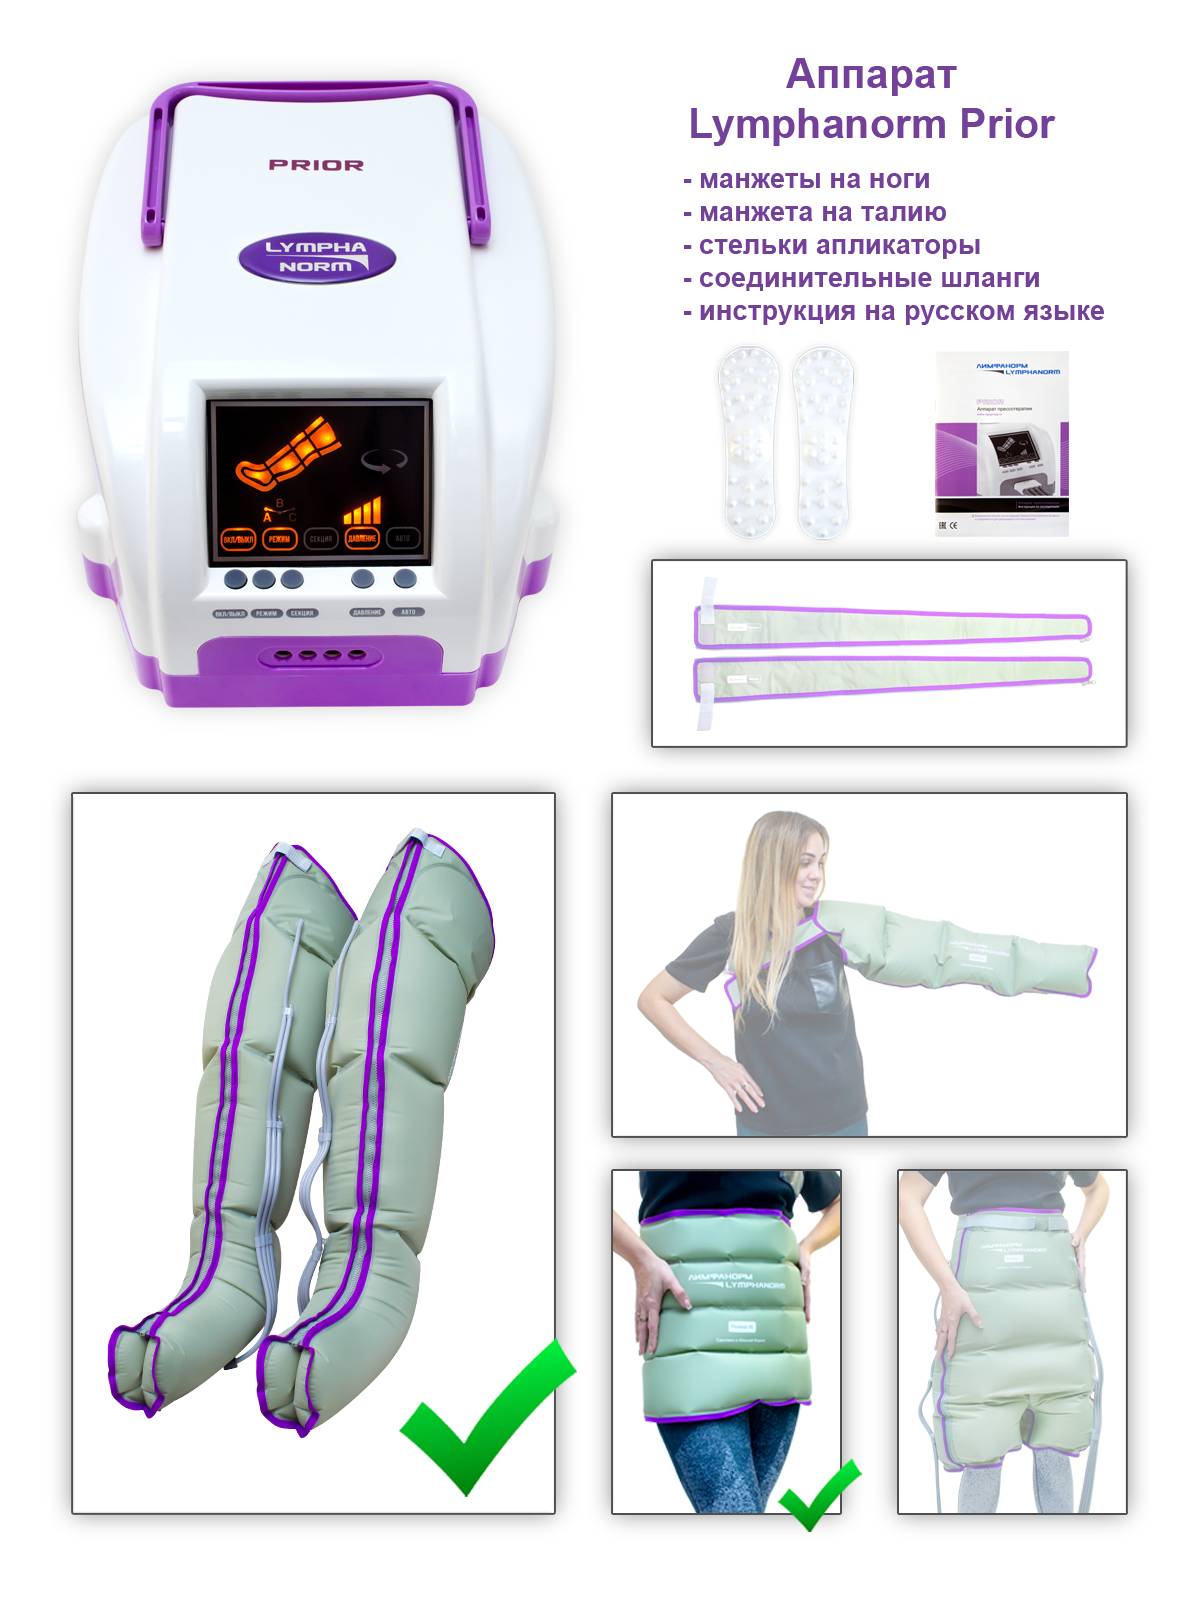 Аппарат для прессотерапии LymphaNorm PRIOR компл. манжеты для ног L, манжета на пояс XL